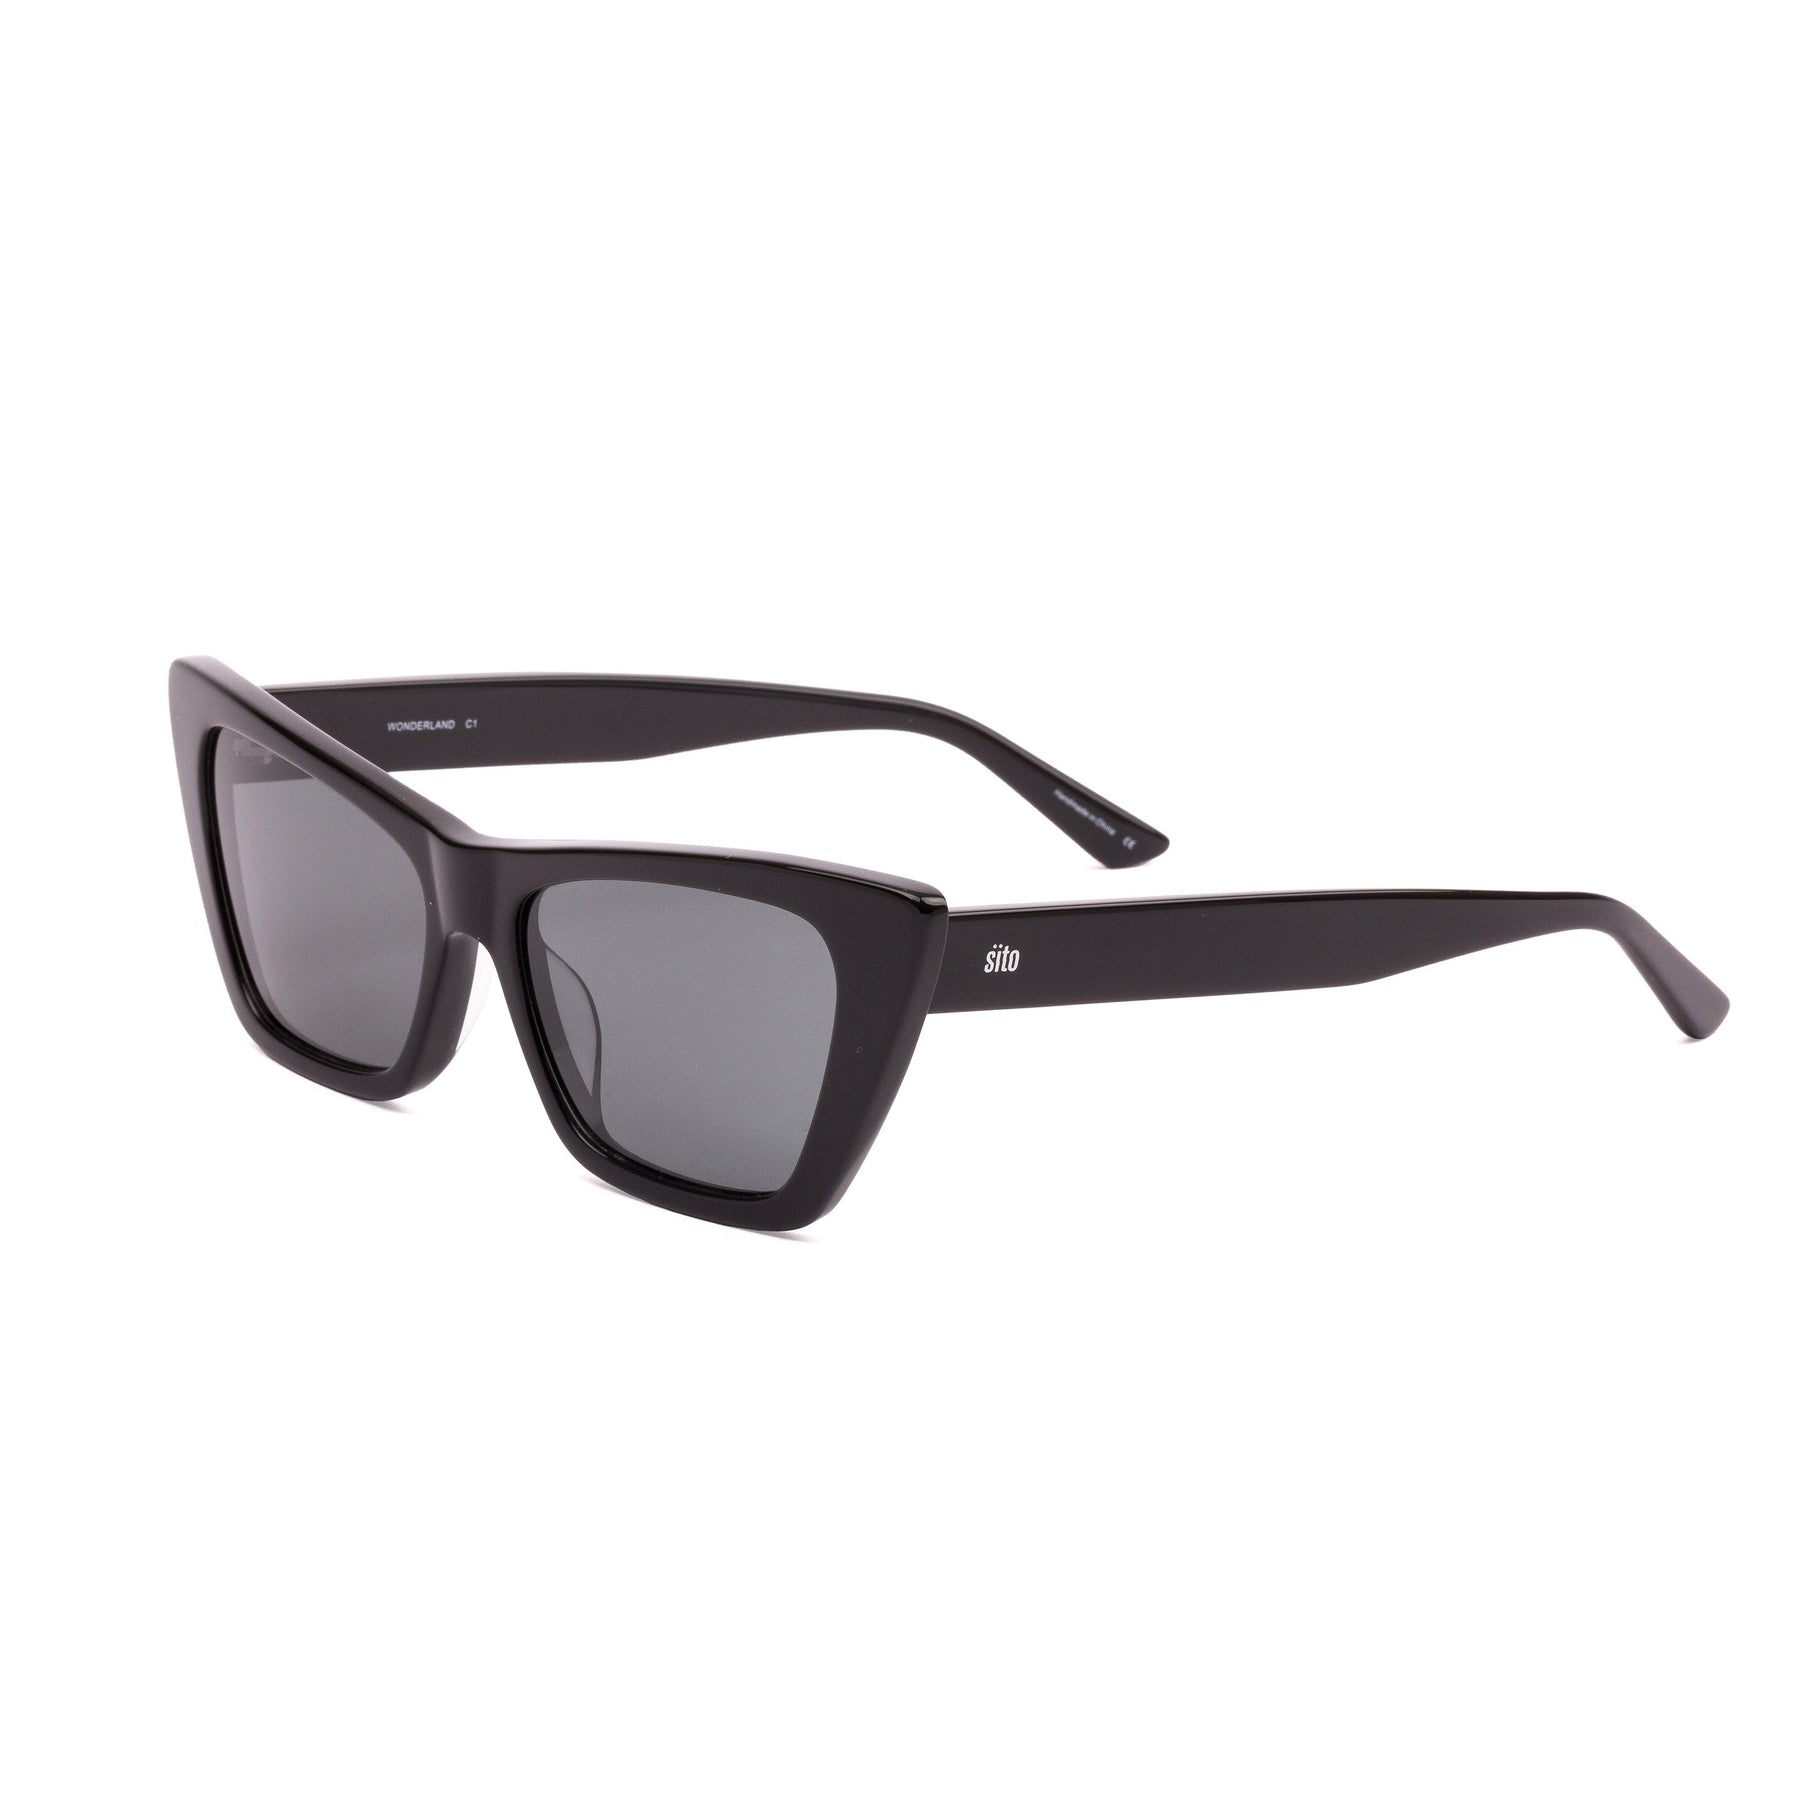 Sito Wonderland Polarized Sunglasses Black IronGrey